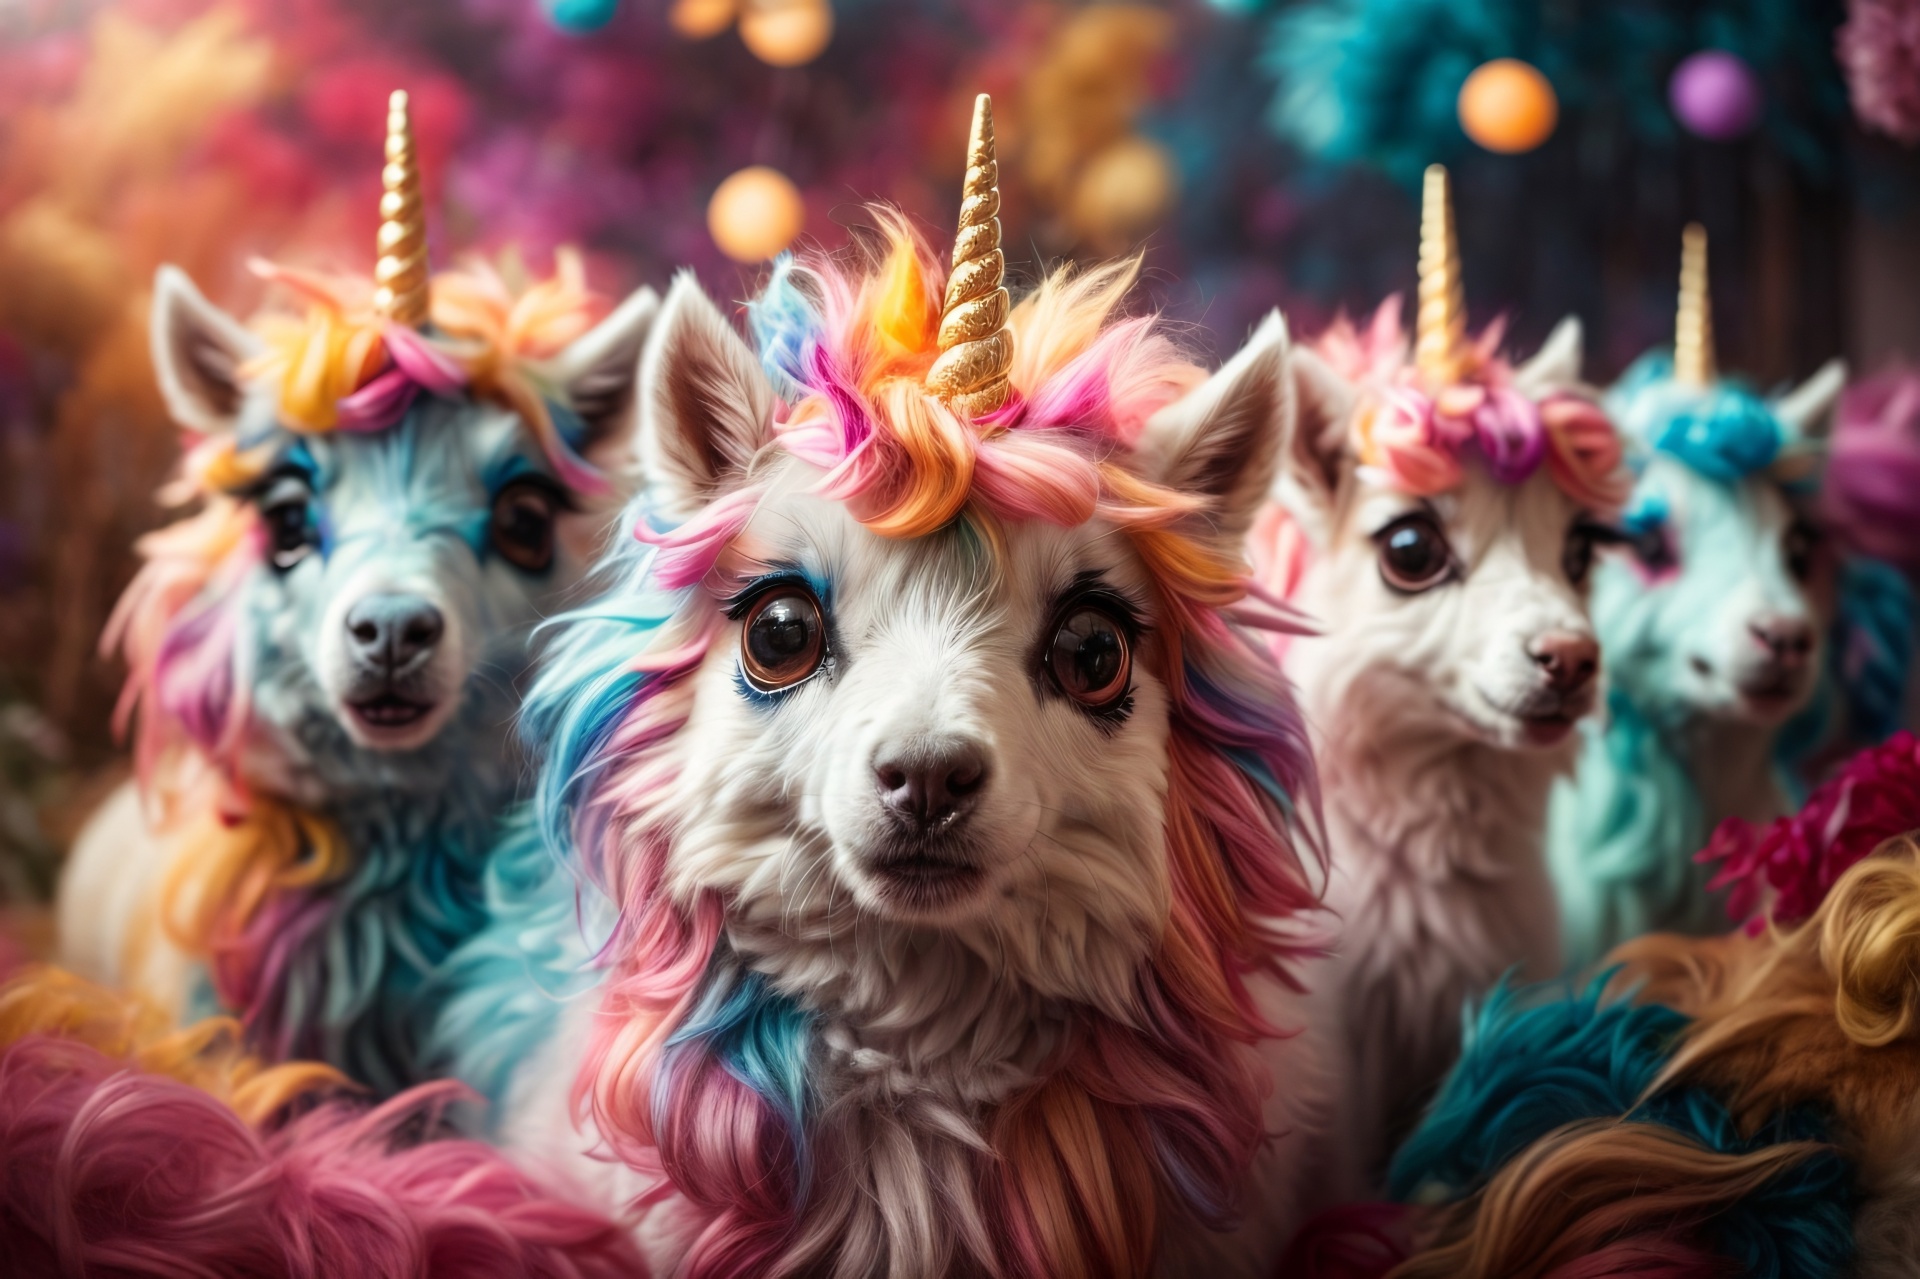 Cute Fluffy Multi-colored Unicorns